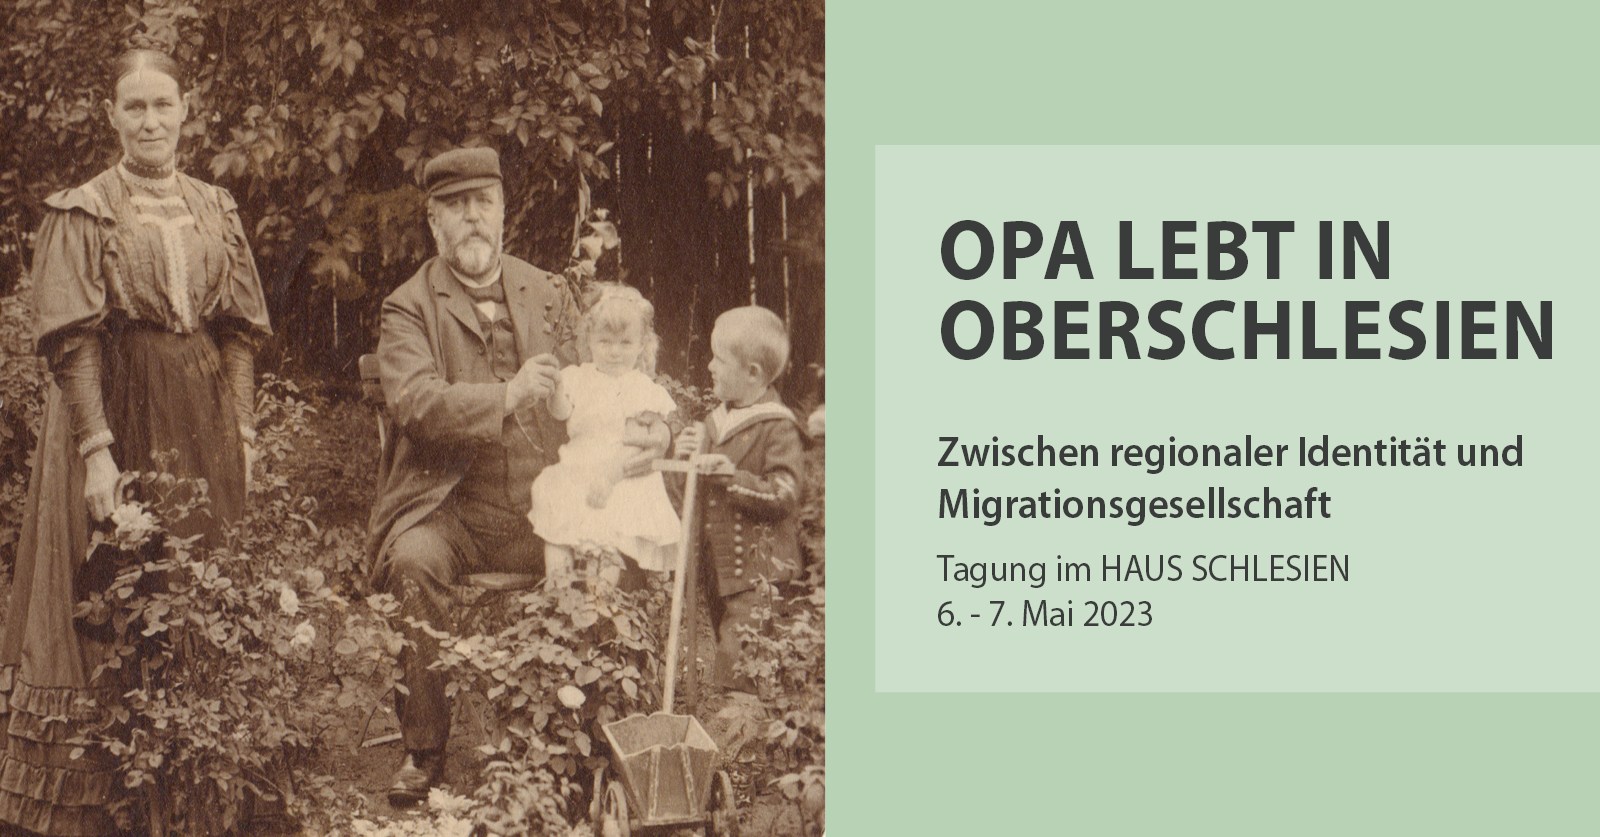 Tagung "Opa lebt in Oberschlesien - zwischen regionaler Identität und Migrationsgesellschaft"